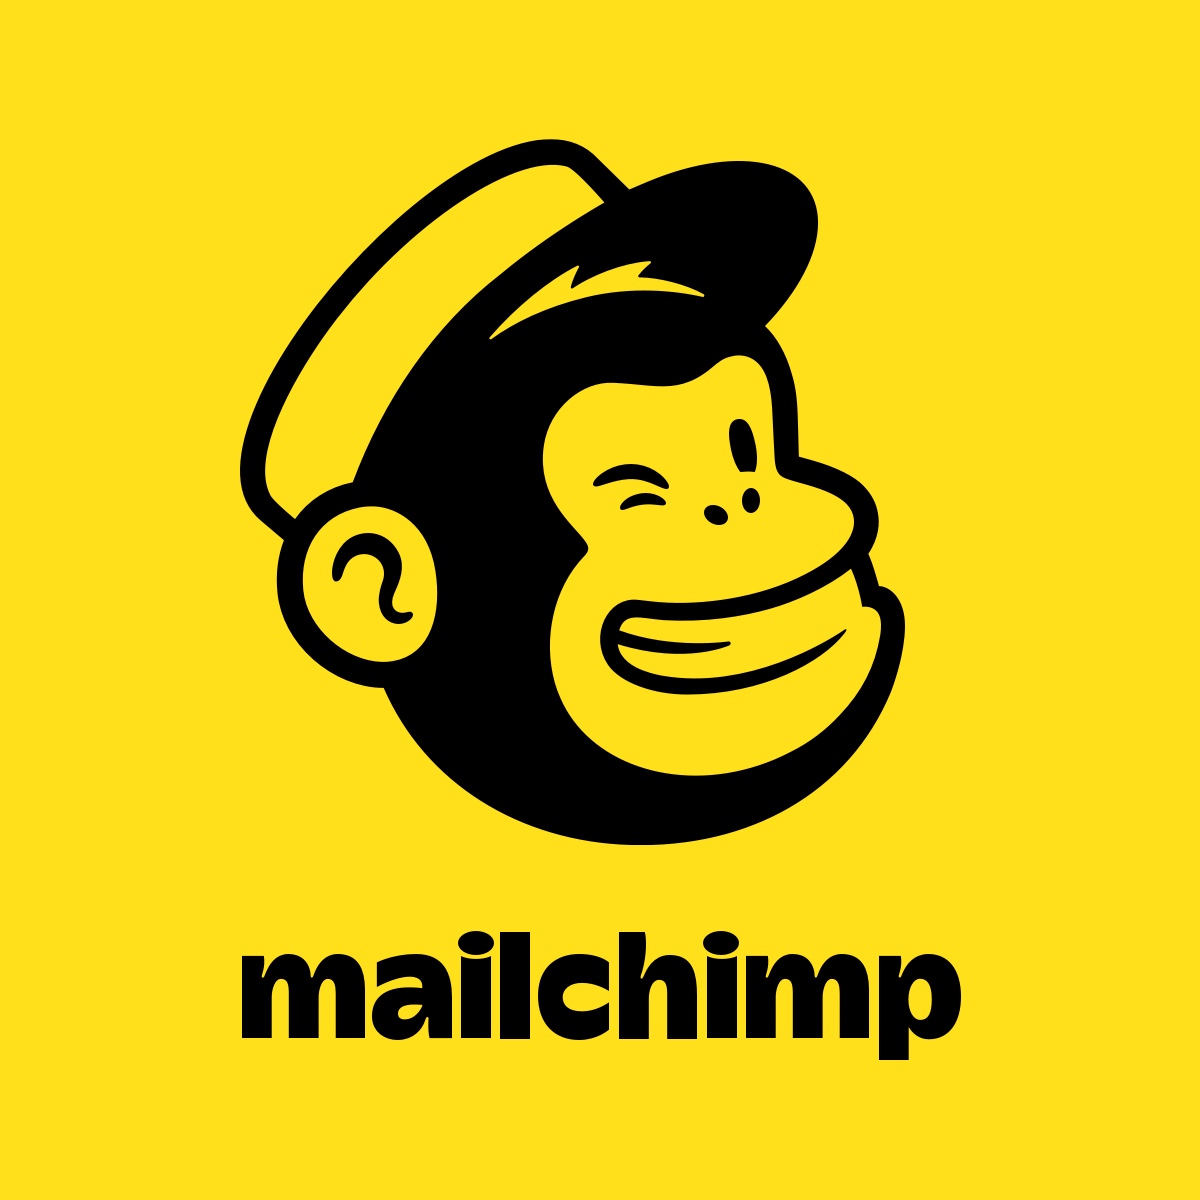 Mailchimp Logo - small business email marketing platform